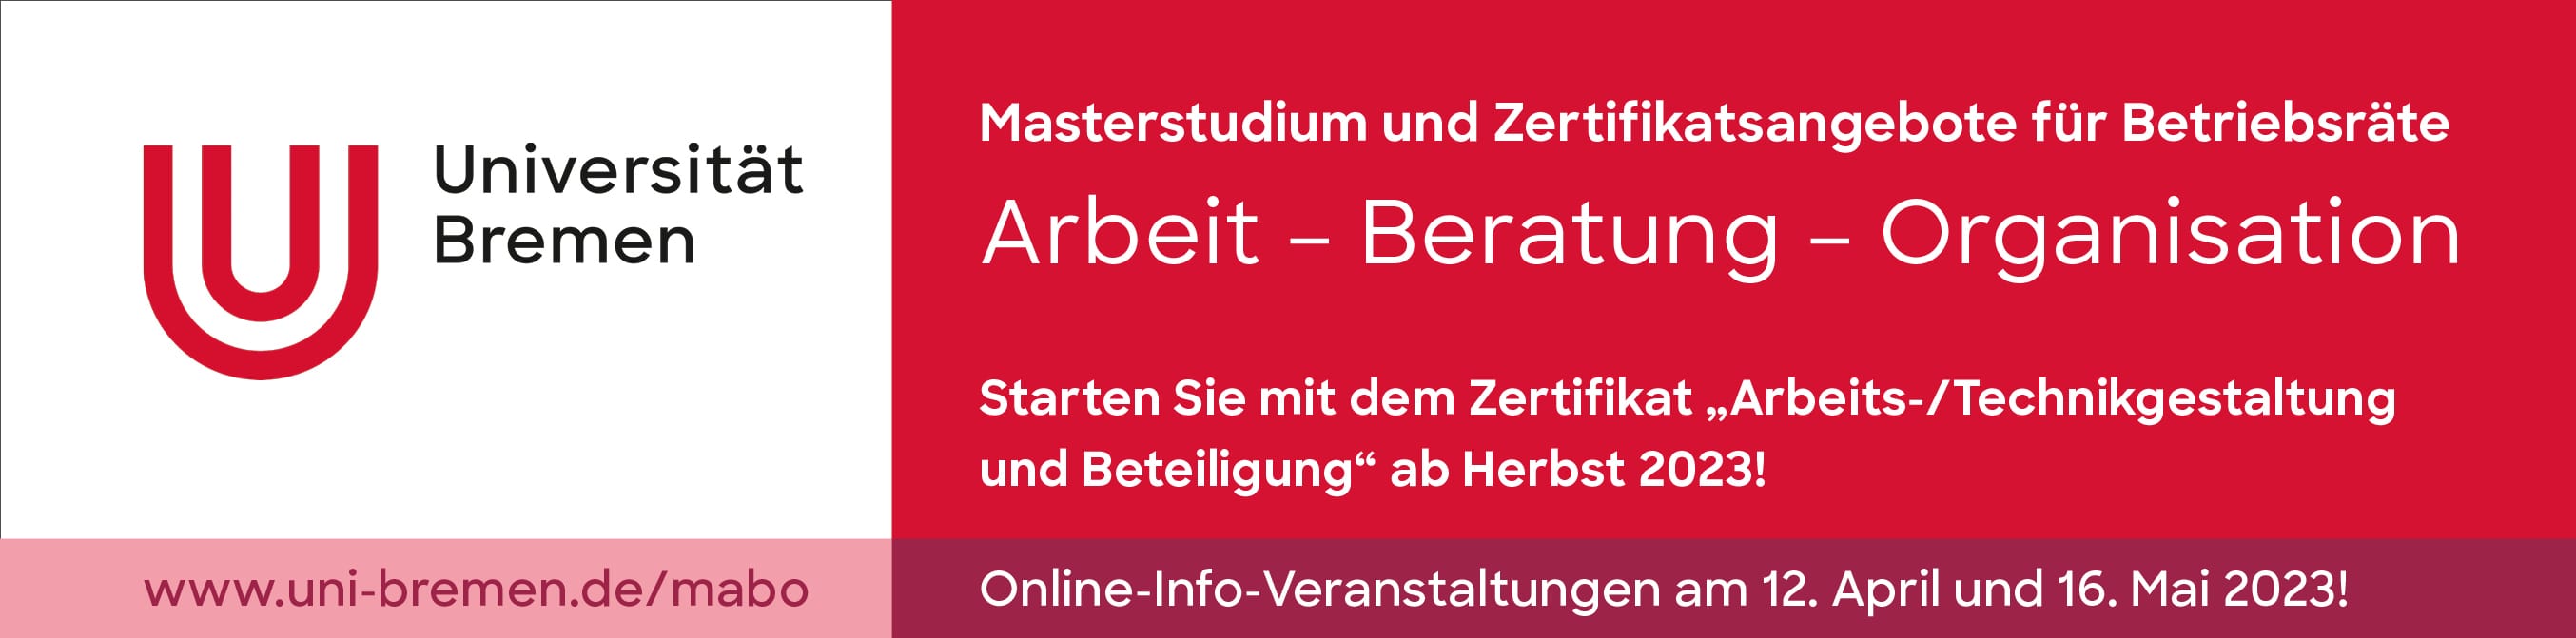 Uni Bremen Masterstudium